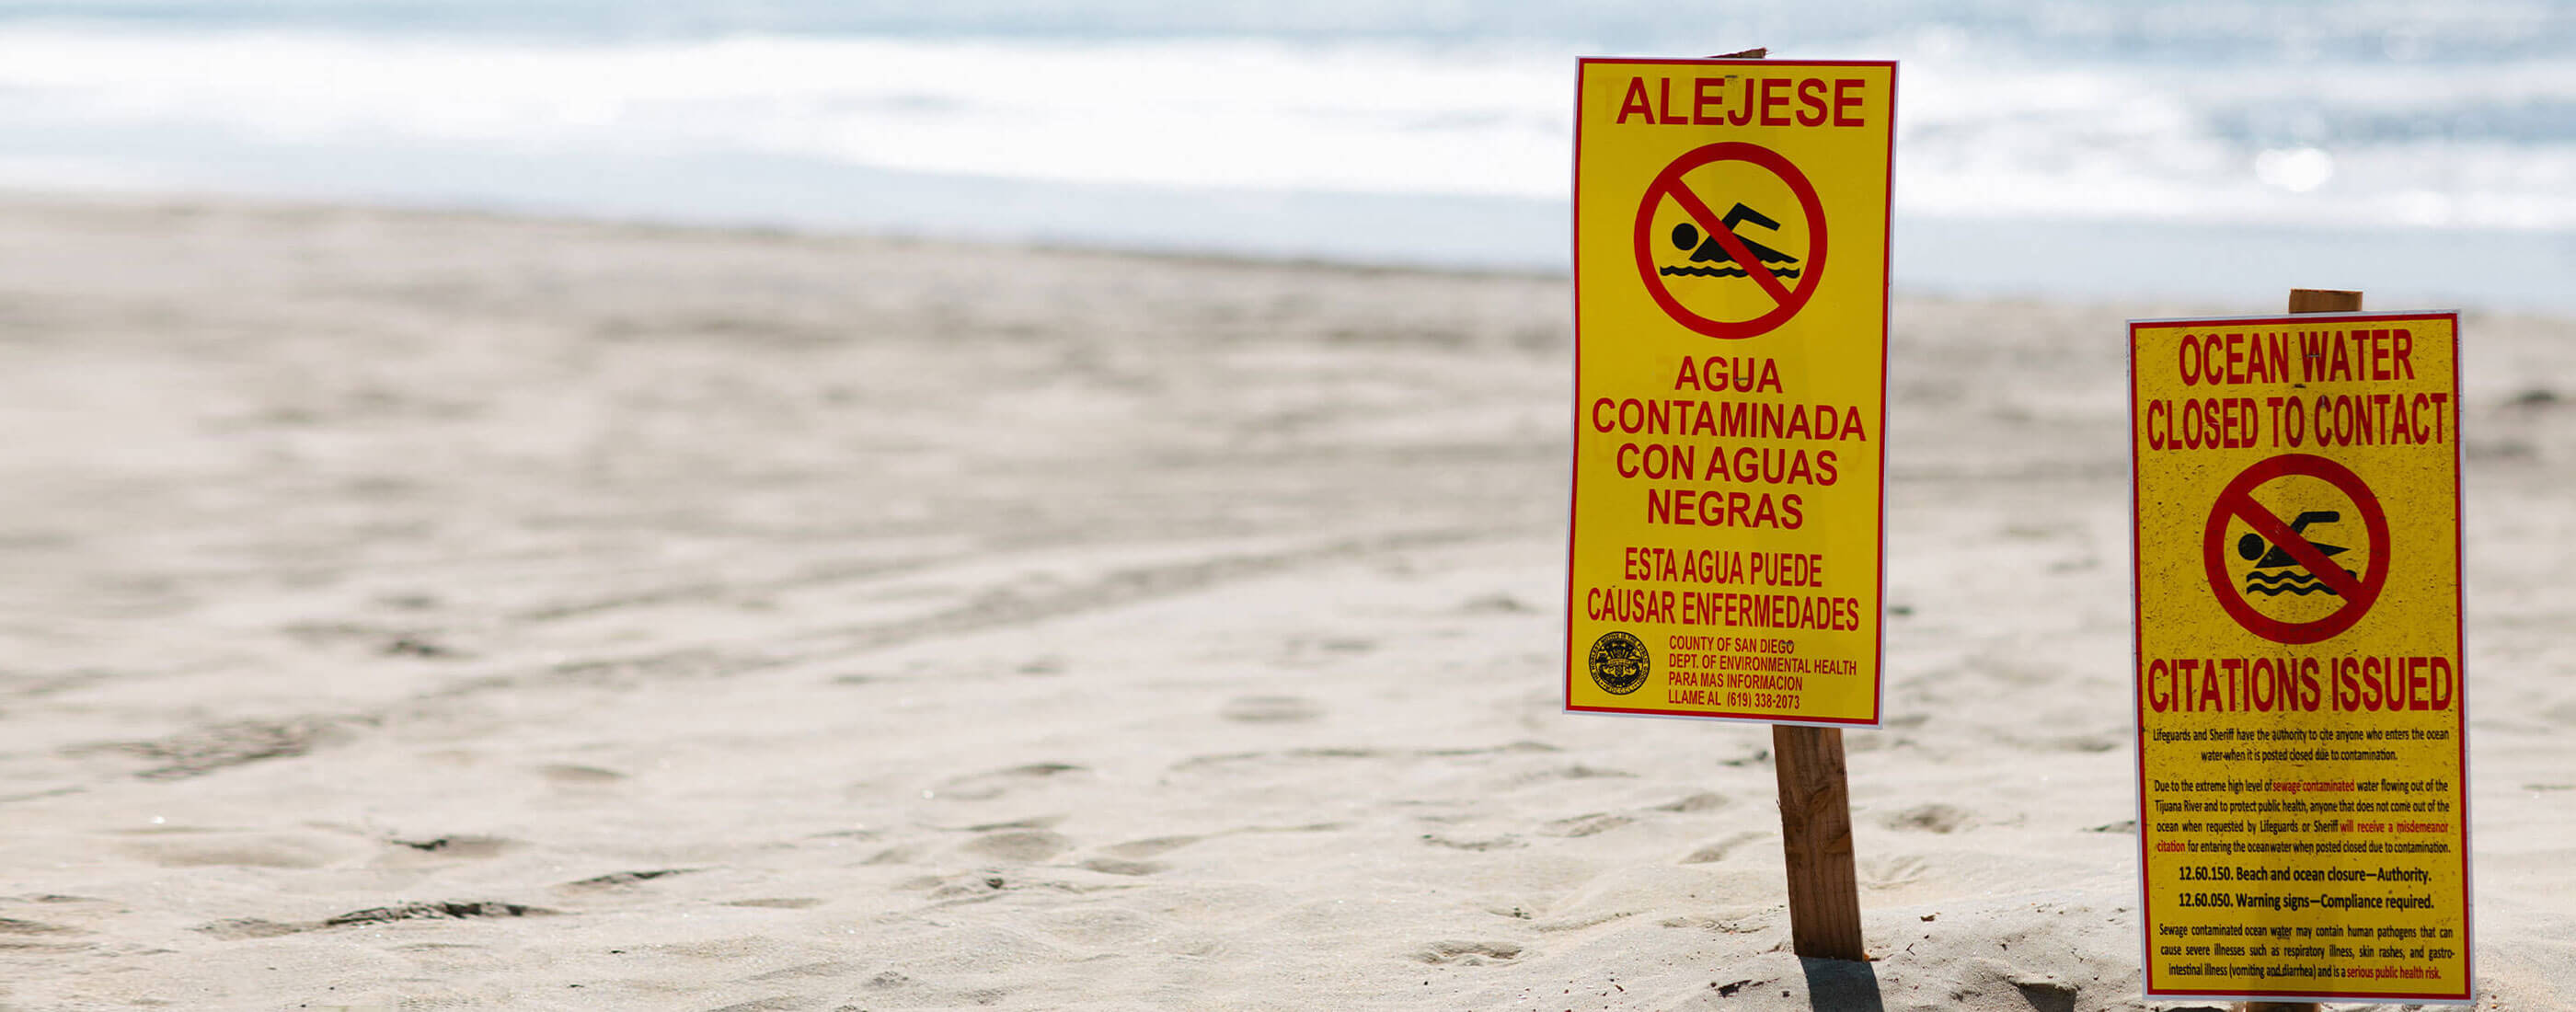 contaminated water warning signs at the beach